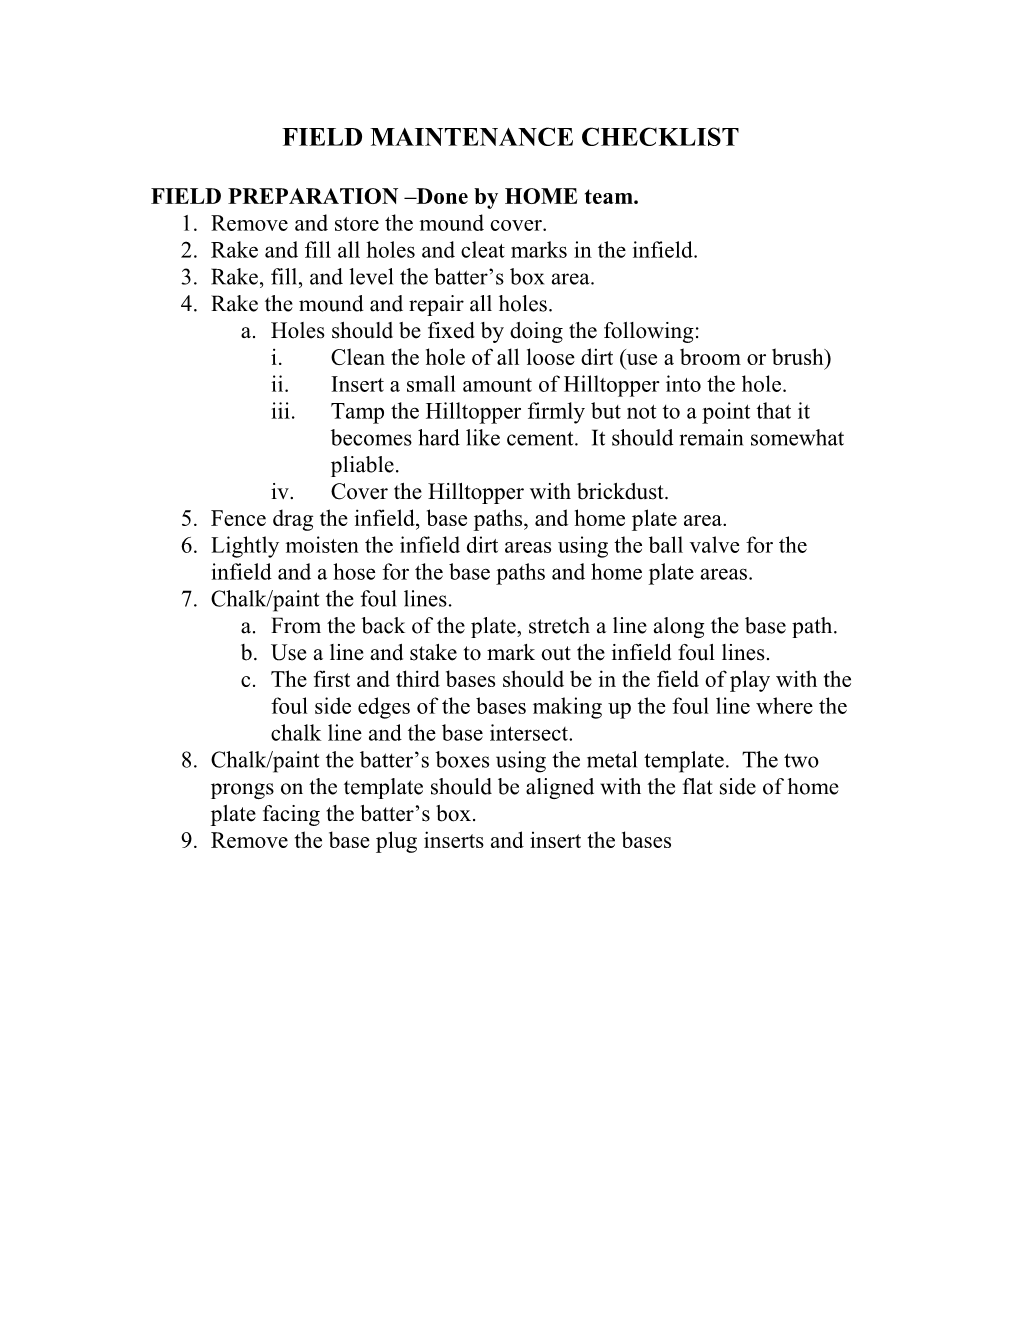 Field Maintenance Checklist